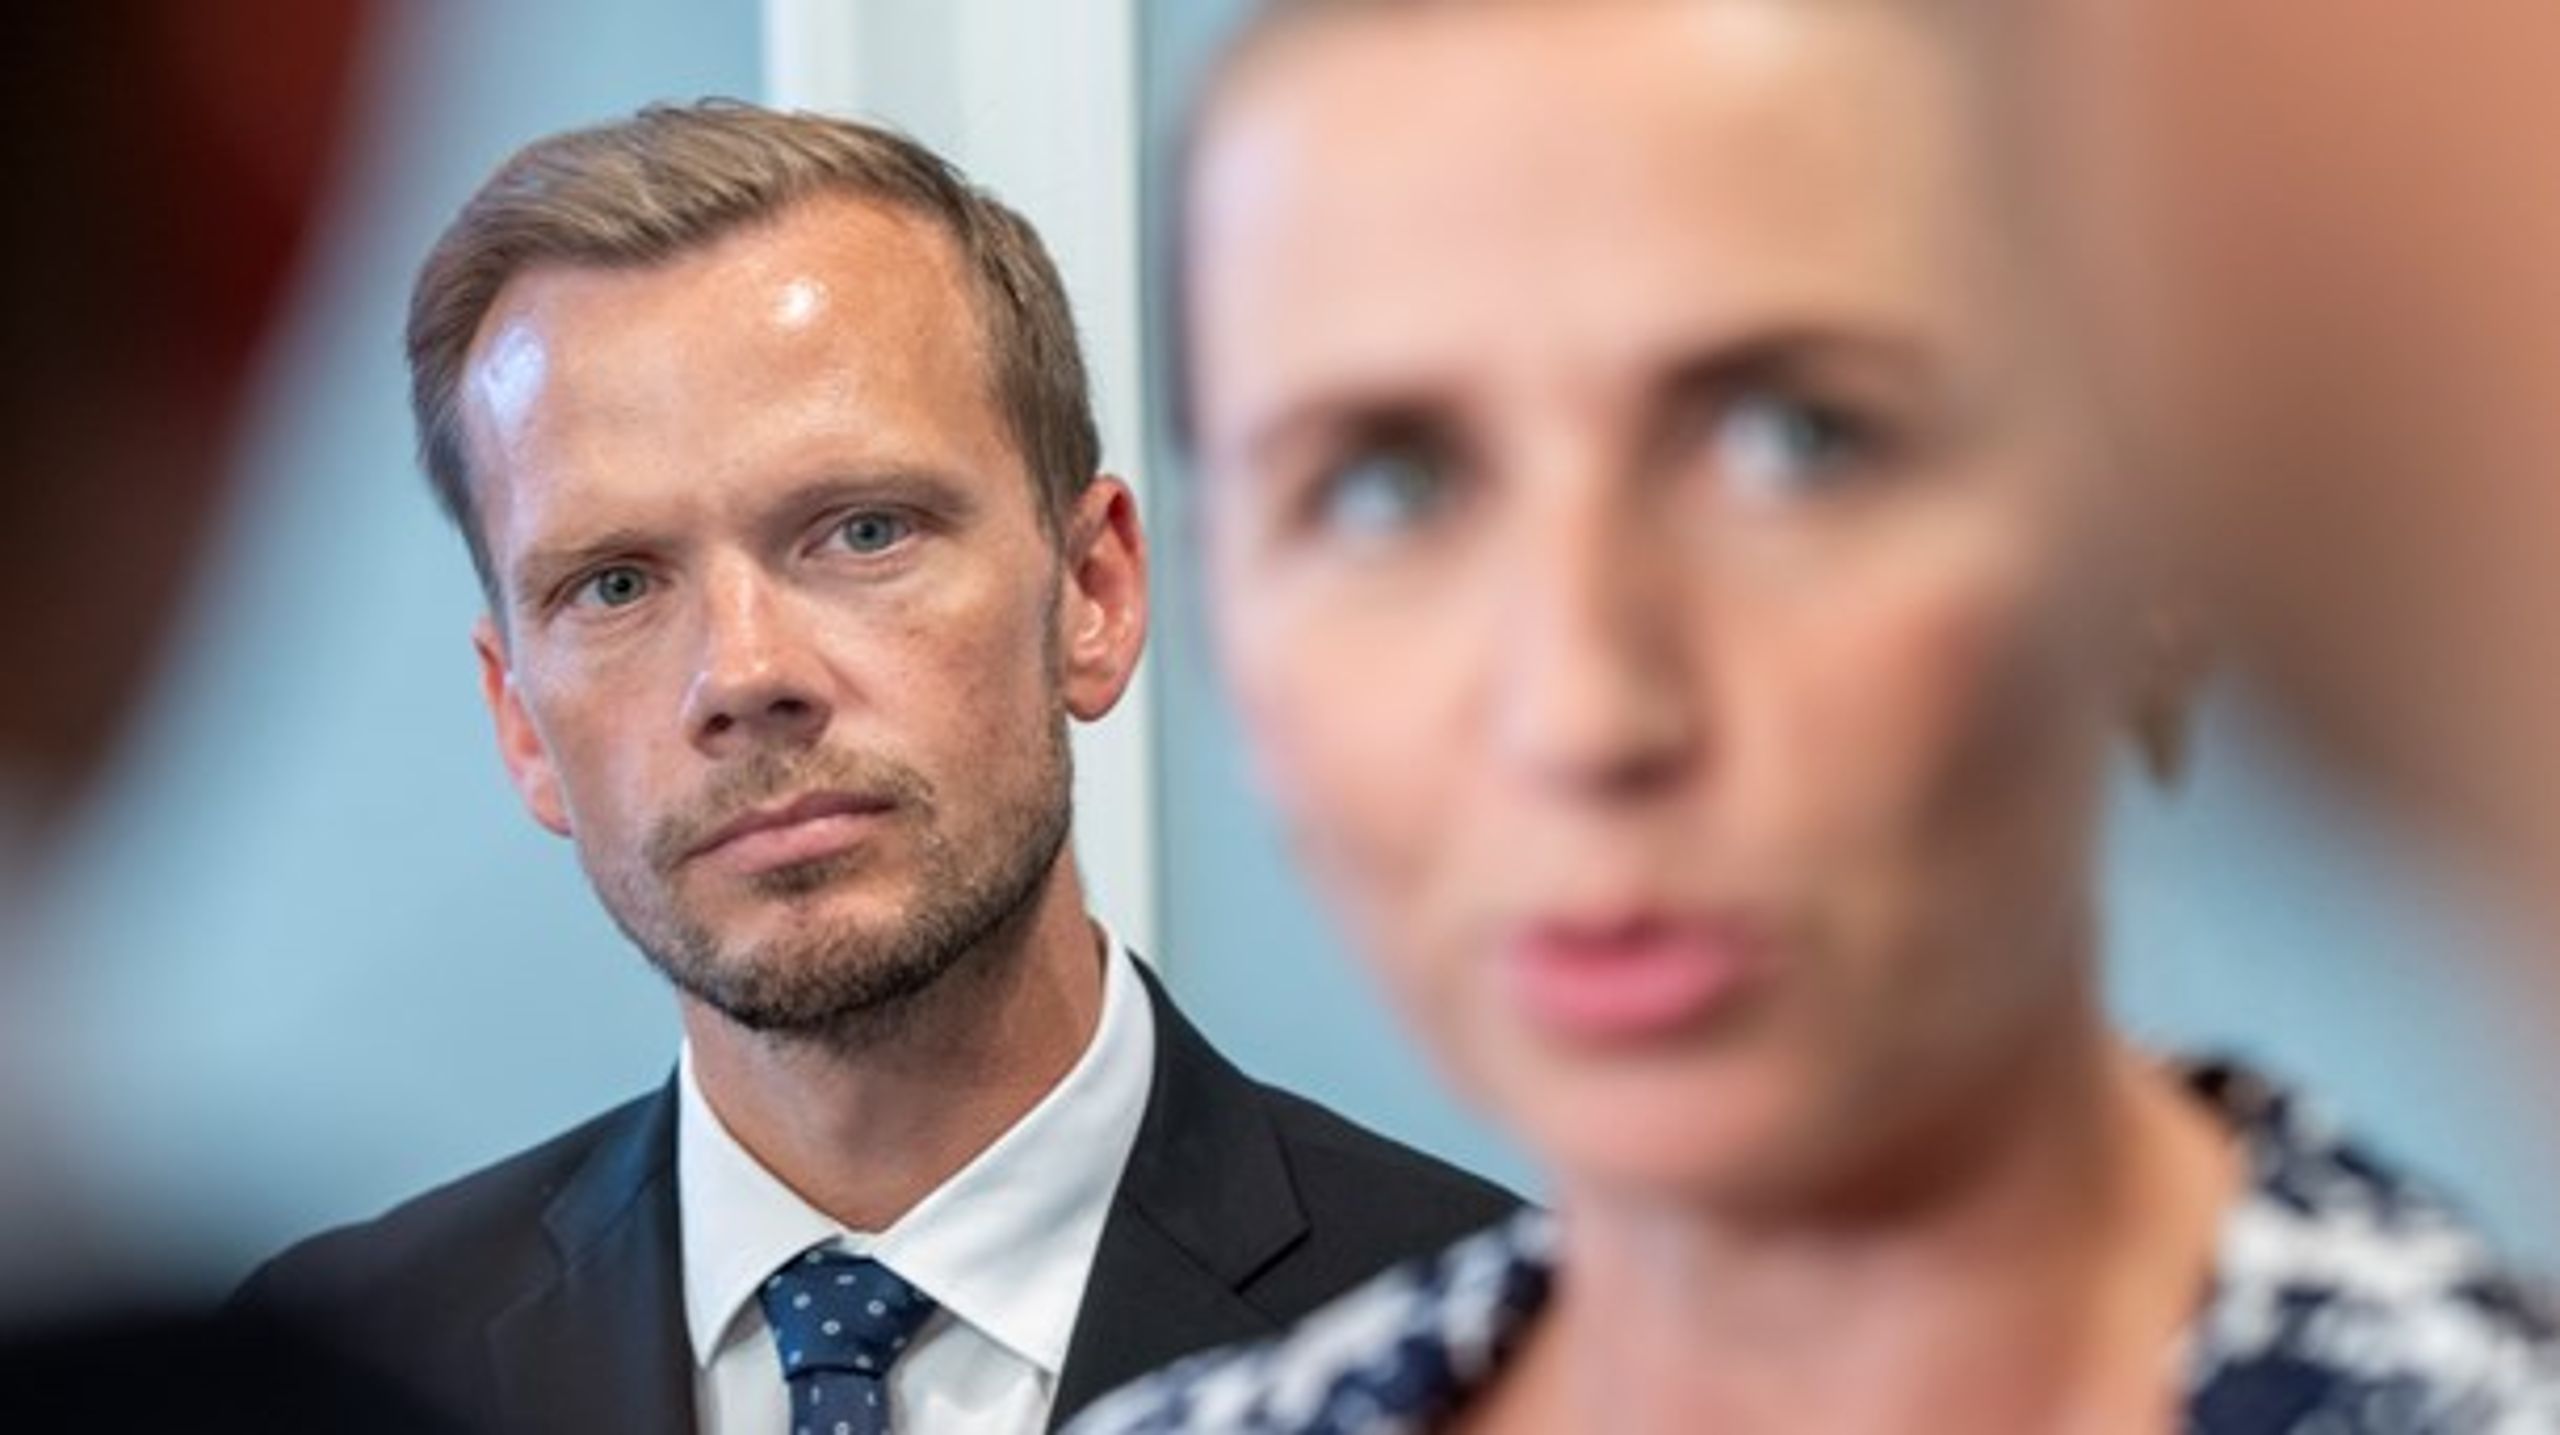 Statsminister Mette Frederiksen meddelte fredag aften, at regeringen "inden for meget kort tid" vil komme med nye udmeldinger, som skal hjælpe danske lønmodtagere og virksomheder.